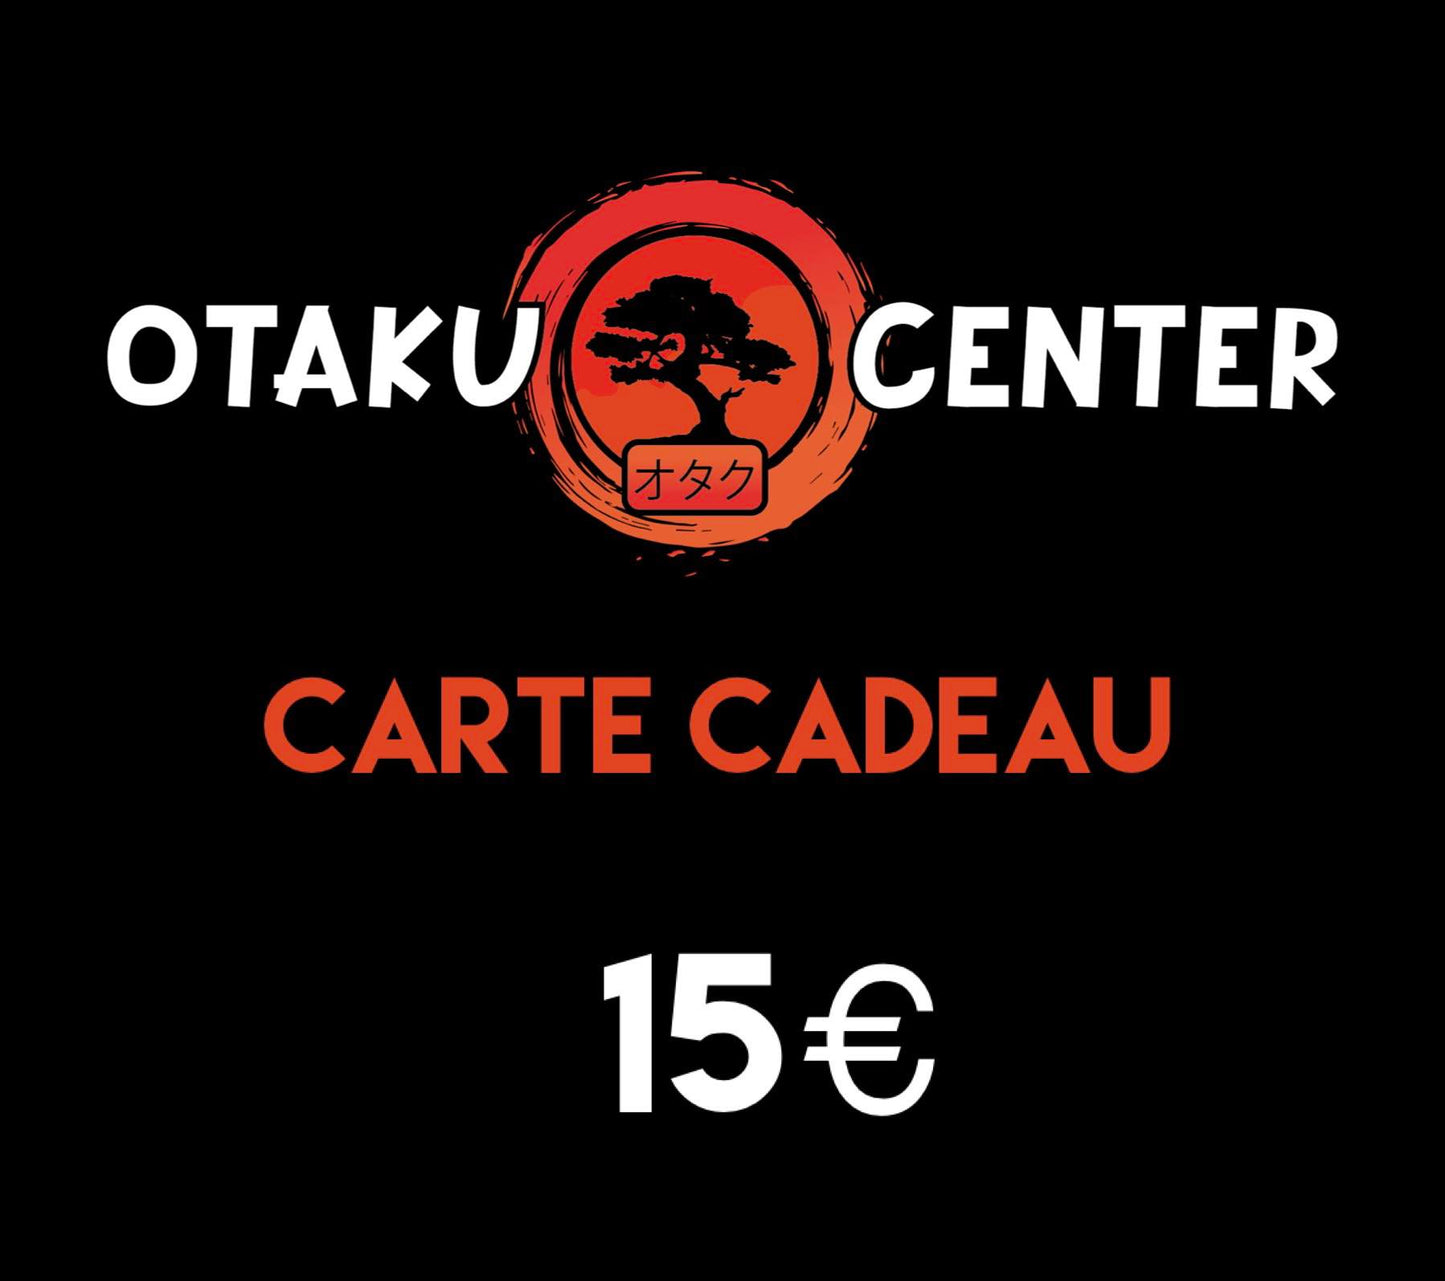 La carte-cadeau Otaku Center